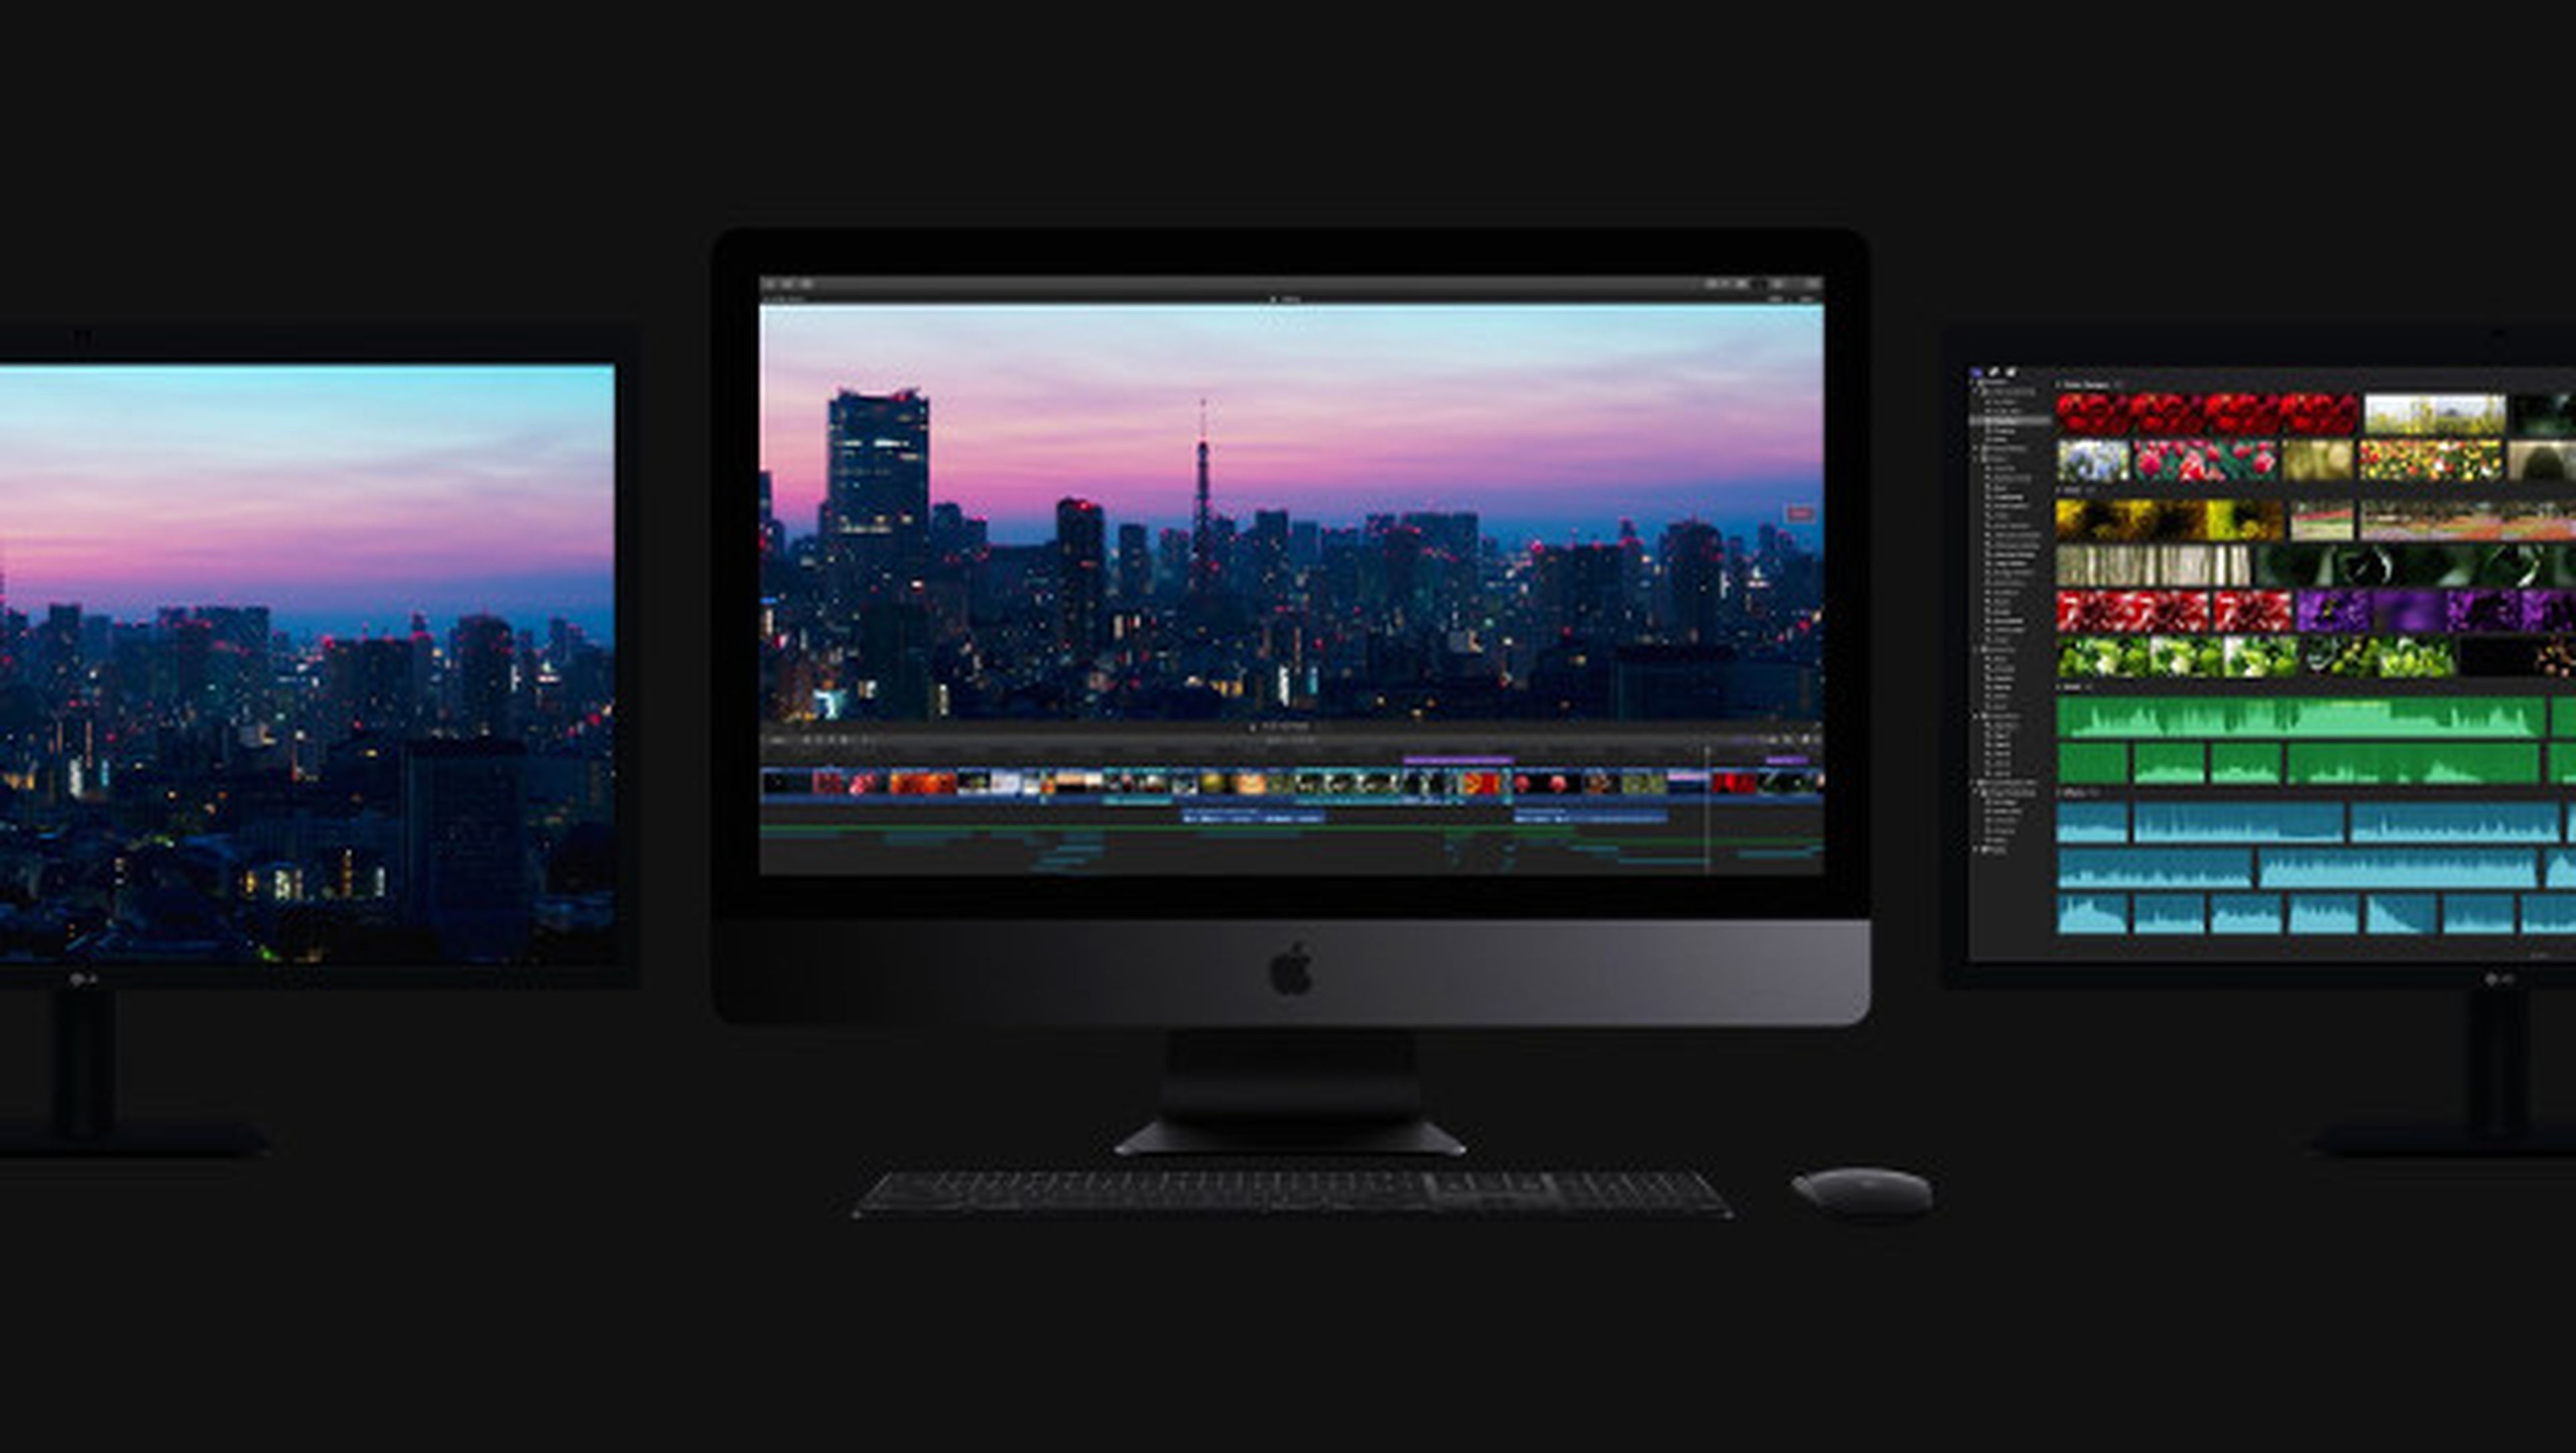 El precio del iMac Pro será de 5.000$, ¿merece la pena pagarlo con estas características?